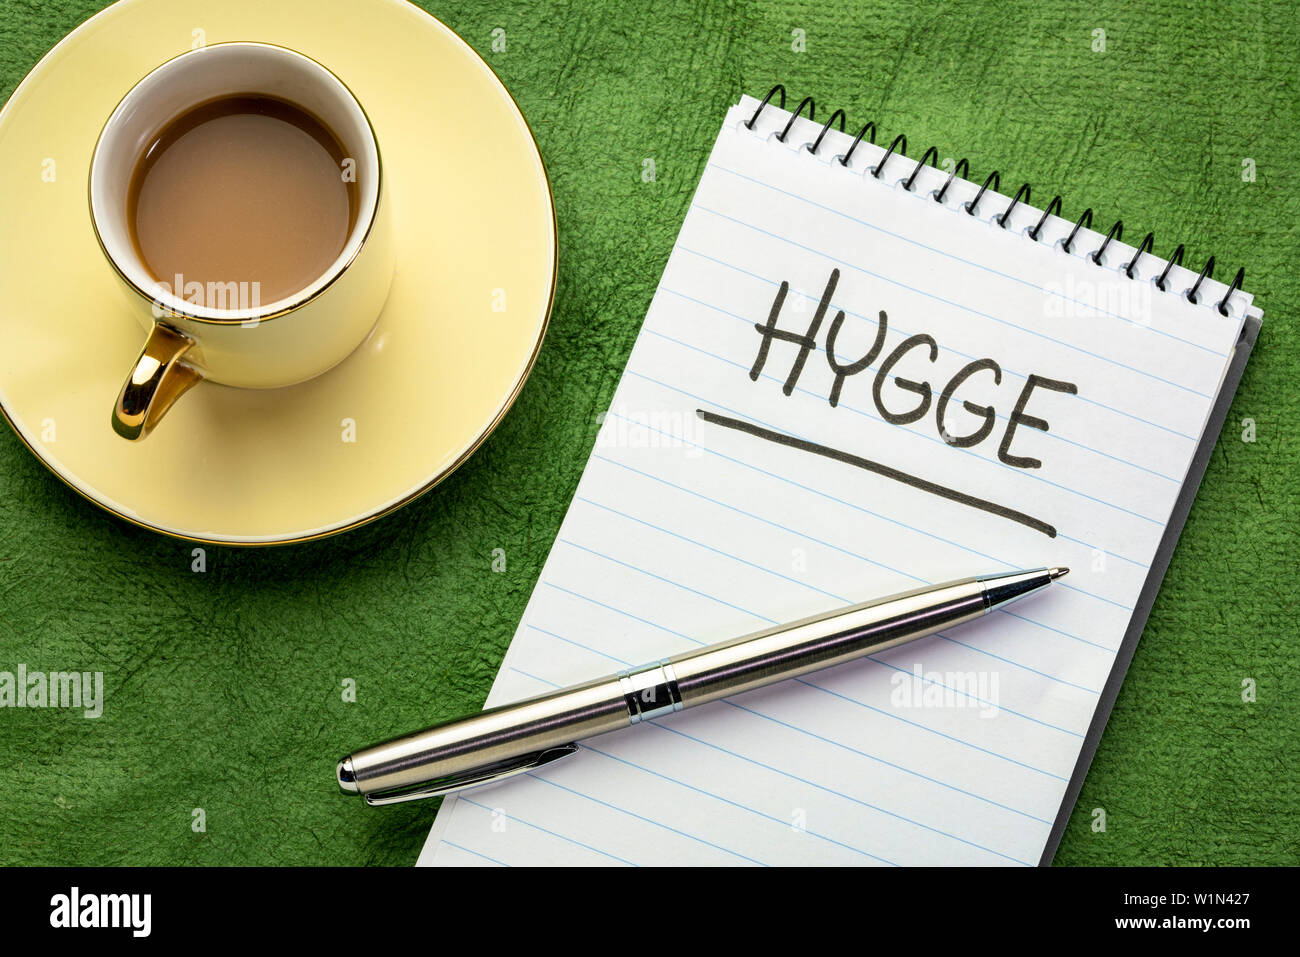 Hygge, dänischen Lebensstil Konzept - Handschrift auf eine Serviette mit einer Tasse Kaffee. Stockfoto